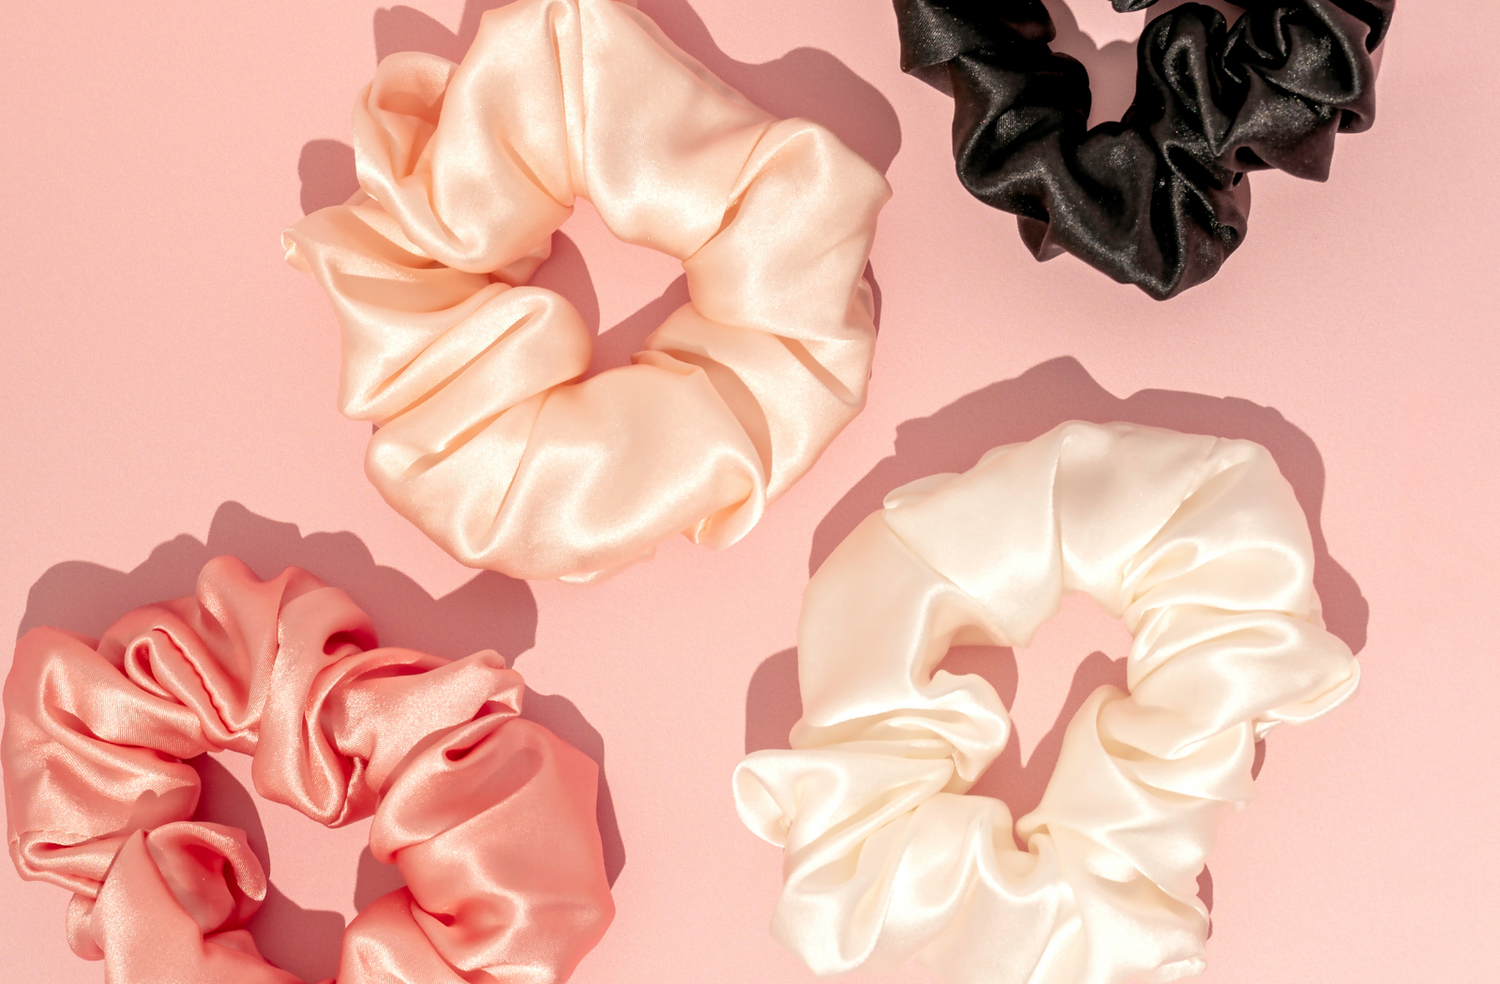 silk scrunchies on pink background